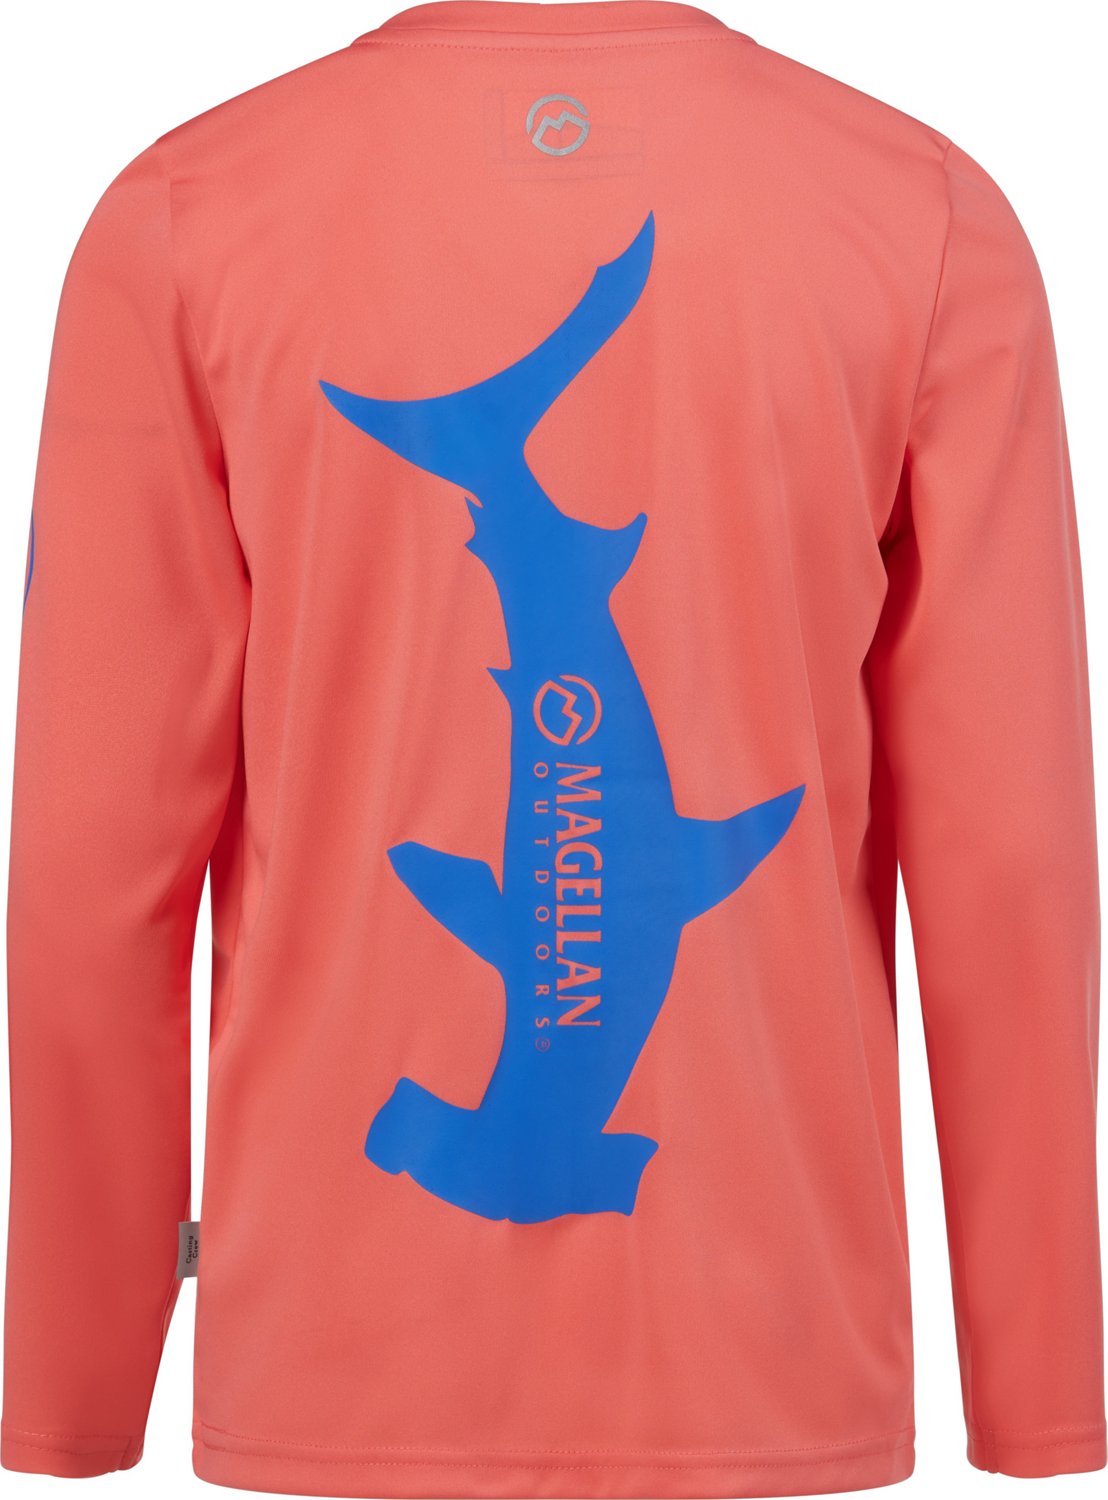 Magellan Kids XL 14-16 Outdoors Fish Gear Boyfriend Fit Long Sleeve Shirt